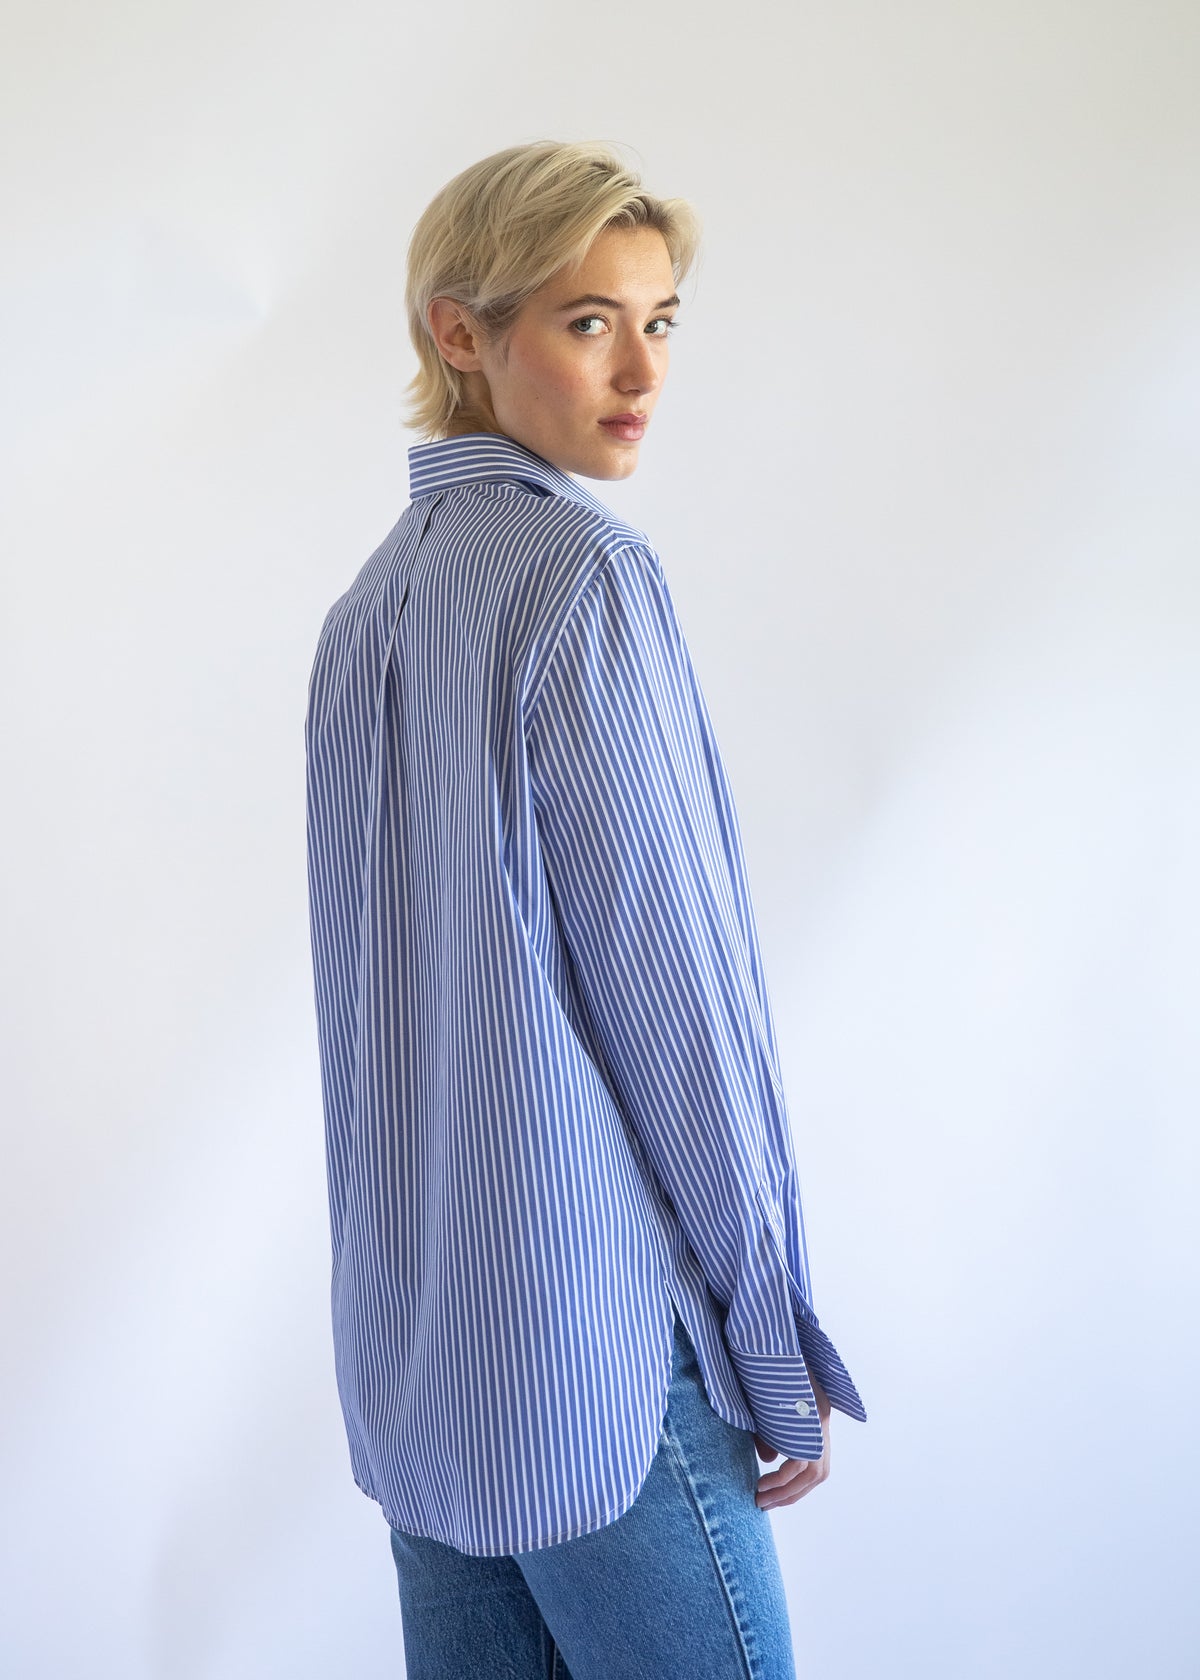 Gemma Button Up Shirt in Cornflower Stripe Cotton Poplin